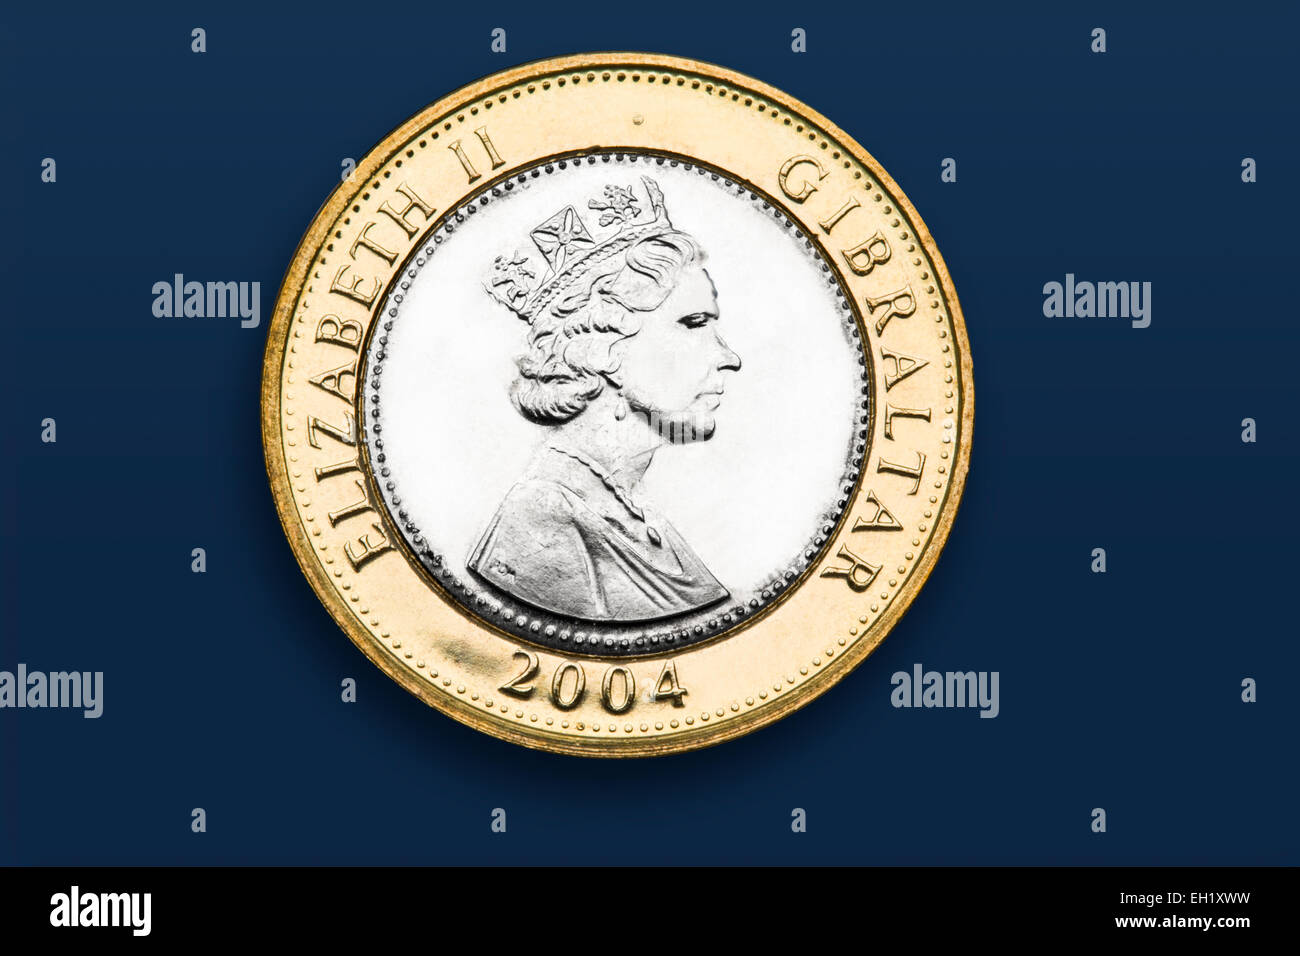 Gibraltar 2 pound coin Stock Photo